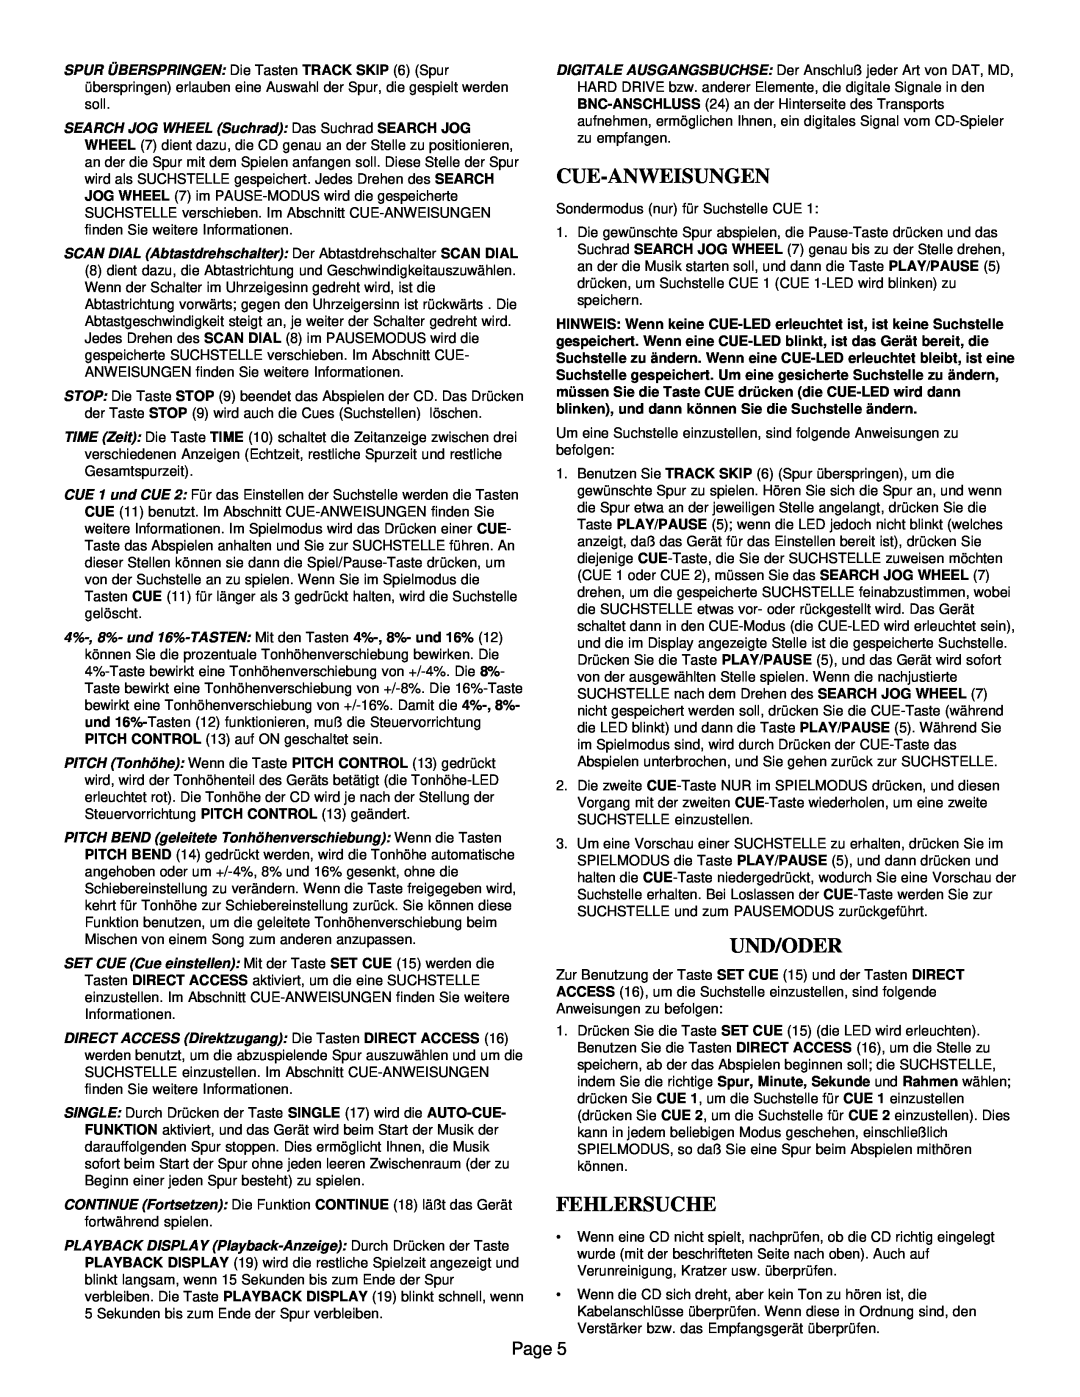 Gemini CD-9800 manual Cue-Anweisungen, Und/Oder, Fehlersuche, Page 